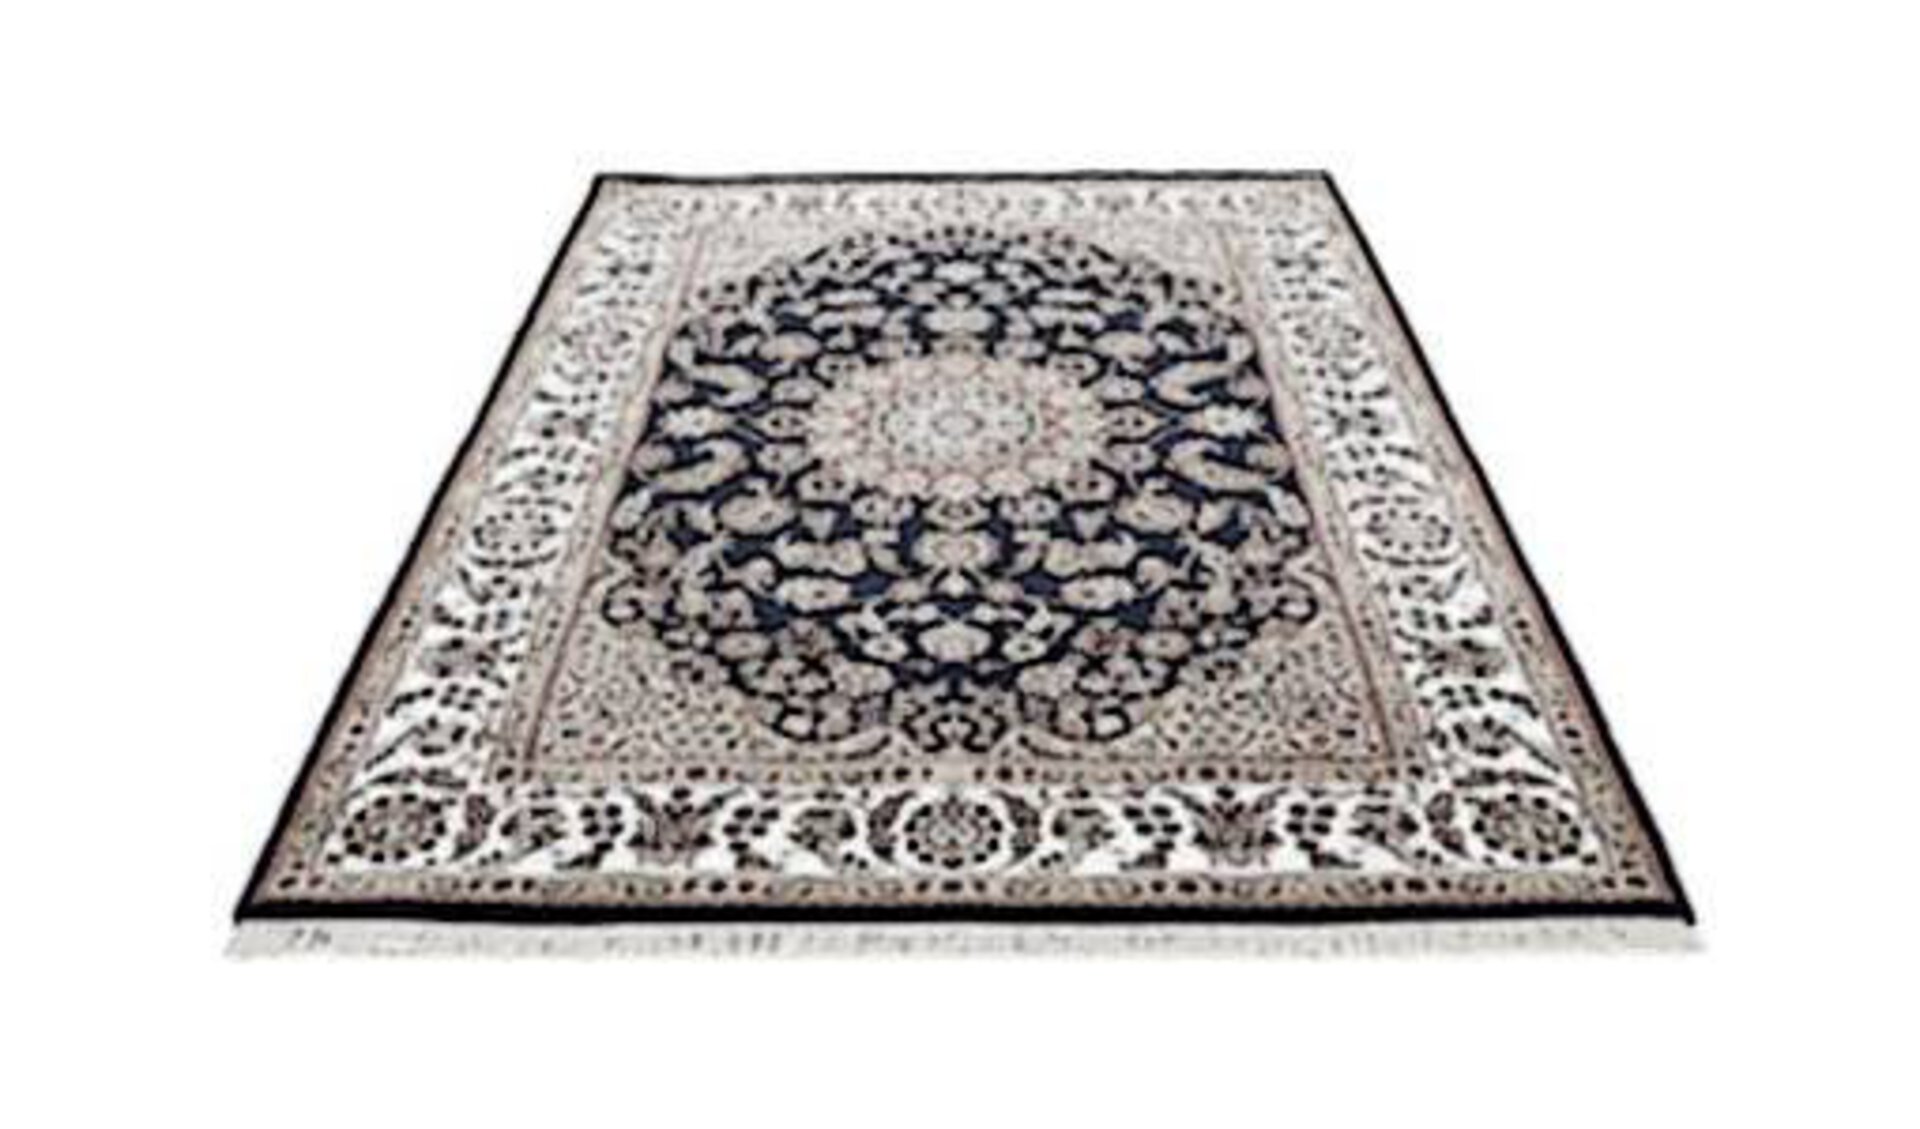 Orientteppiche werden durch einen stilisierten Orientteppich mit typischem Muster in Grau dargestellt.